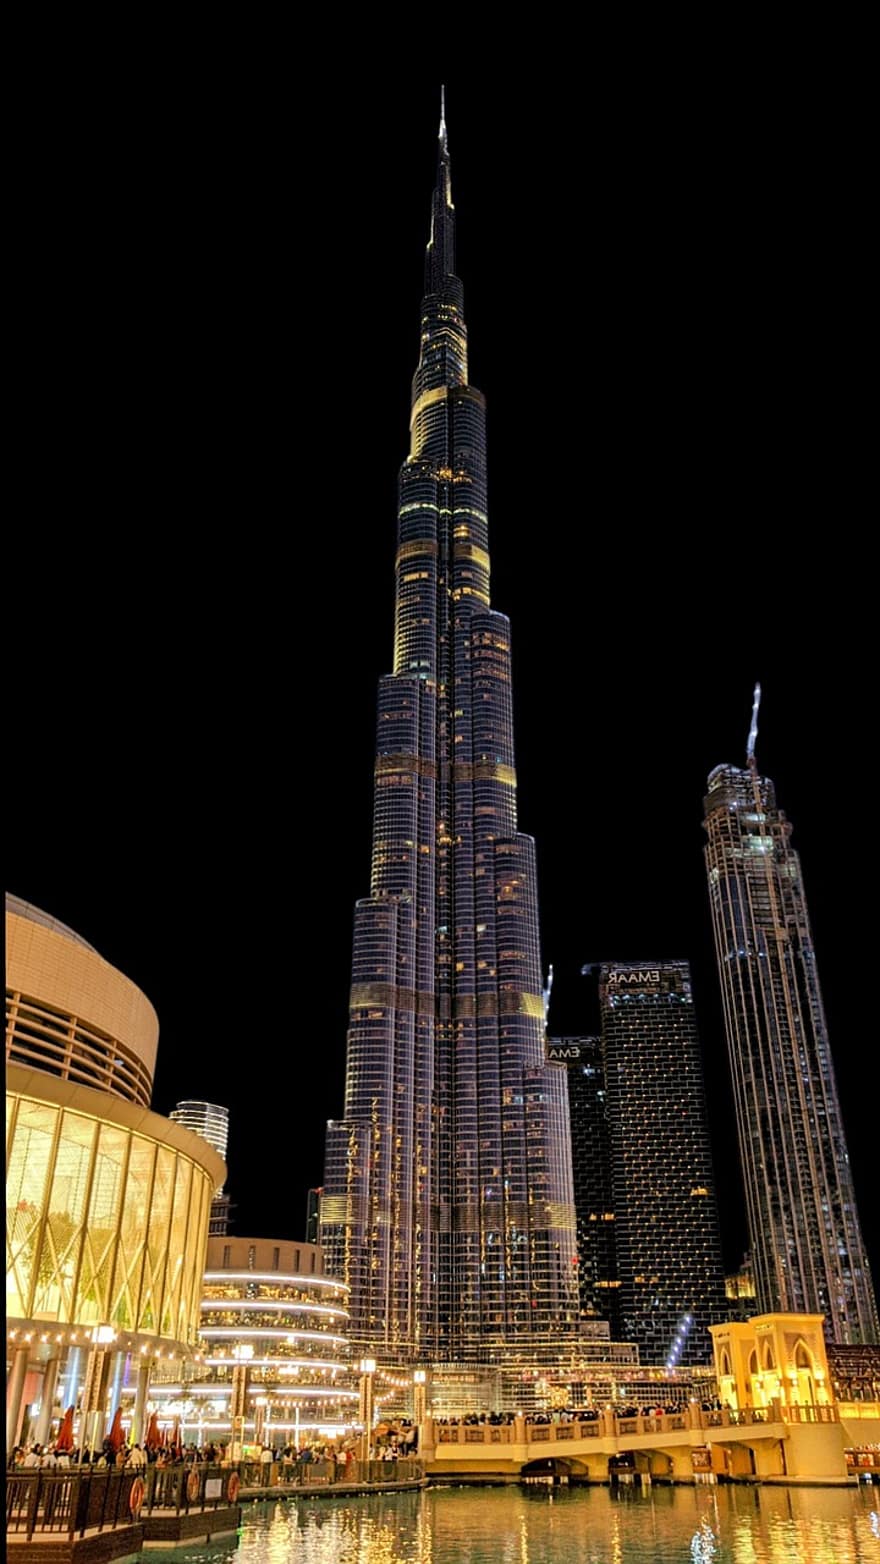 burj khalifa, emiráty, architektura, město, městský, metropolitní, mrakodrapy, noc, mrakodrap, slavné místo, panoráma města